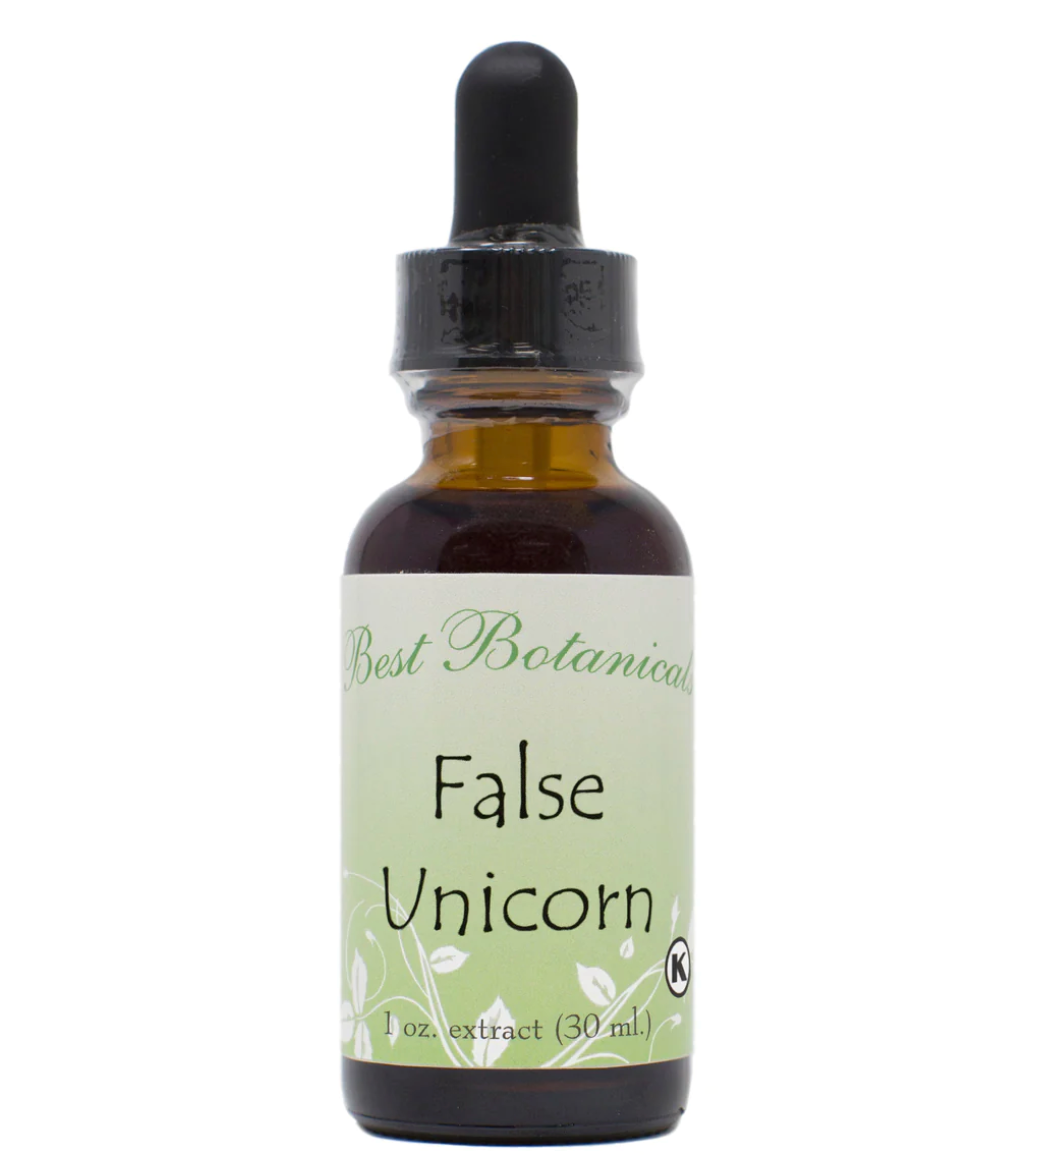 False Unicorn Extract Herbal Tincture